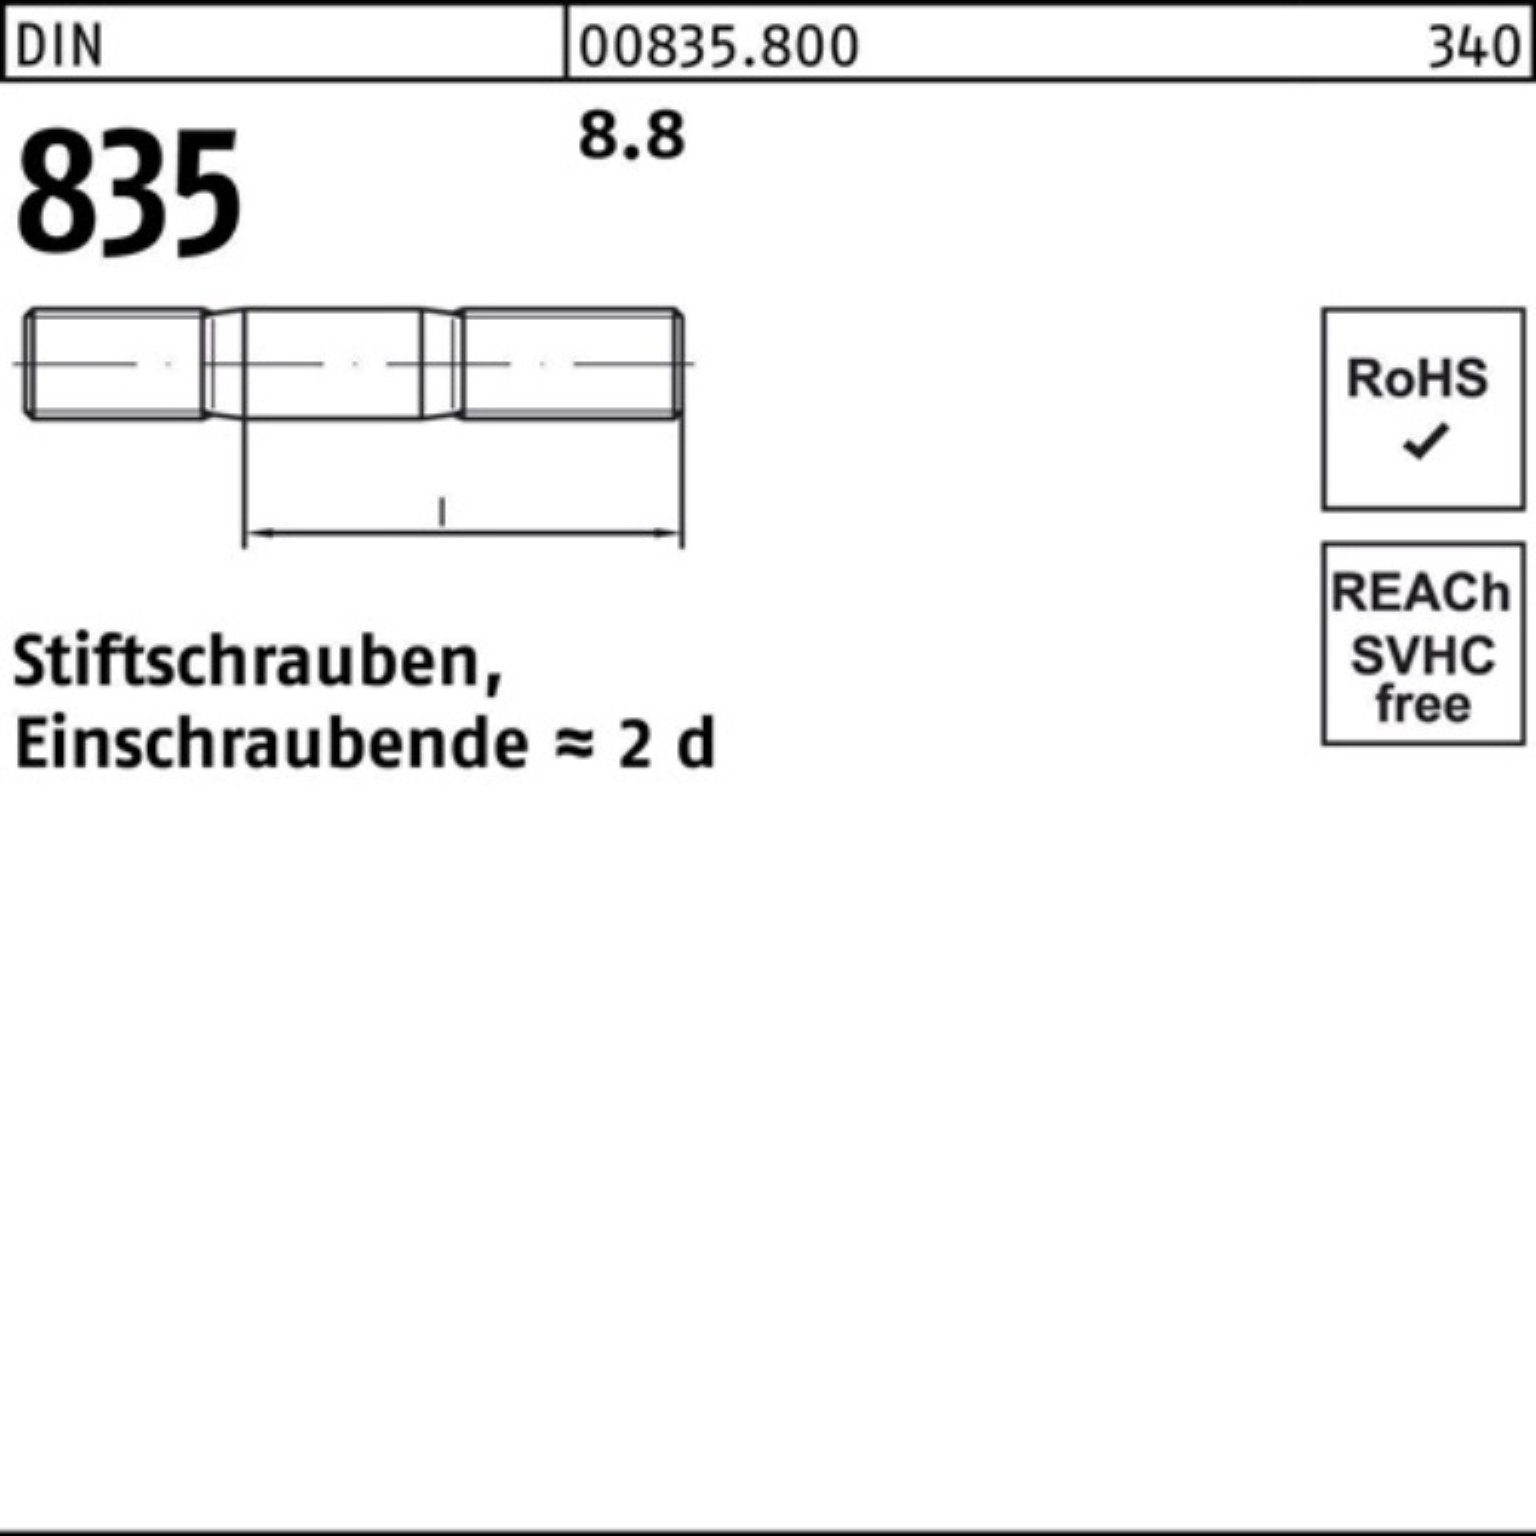 Pack Stiftschraube 8.8 40 835 Stü DIN M8x 100 Stiftschraube Reyher 100er Einschraubende=2d